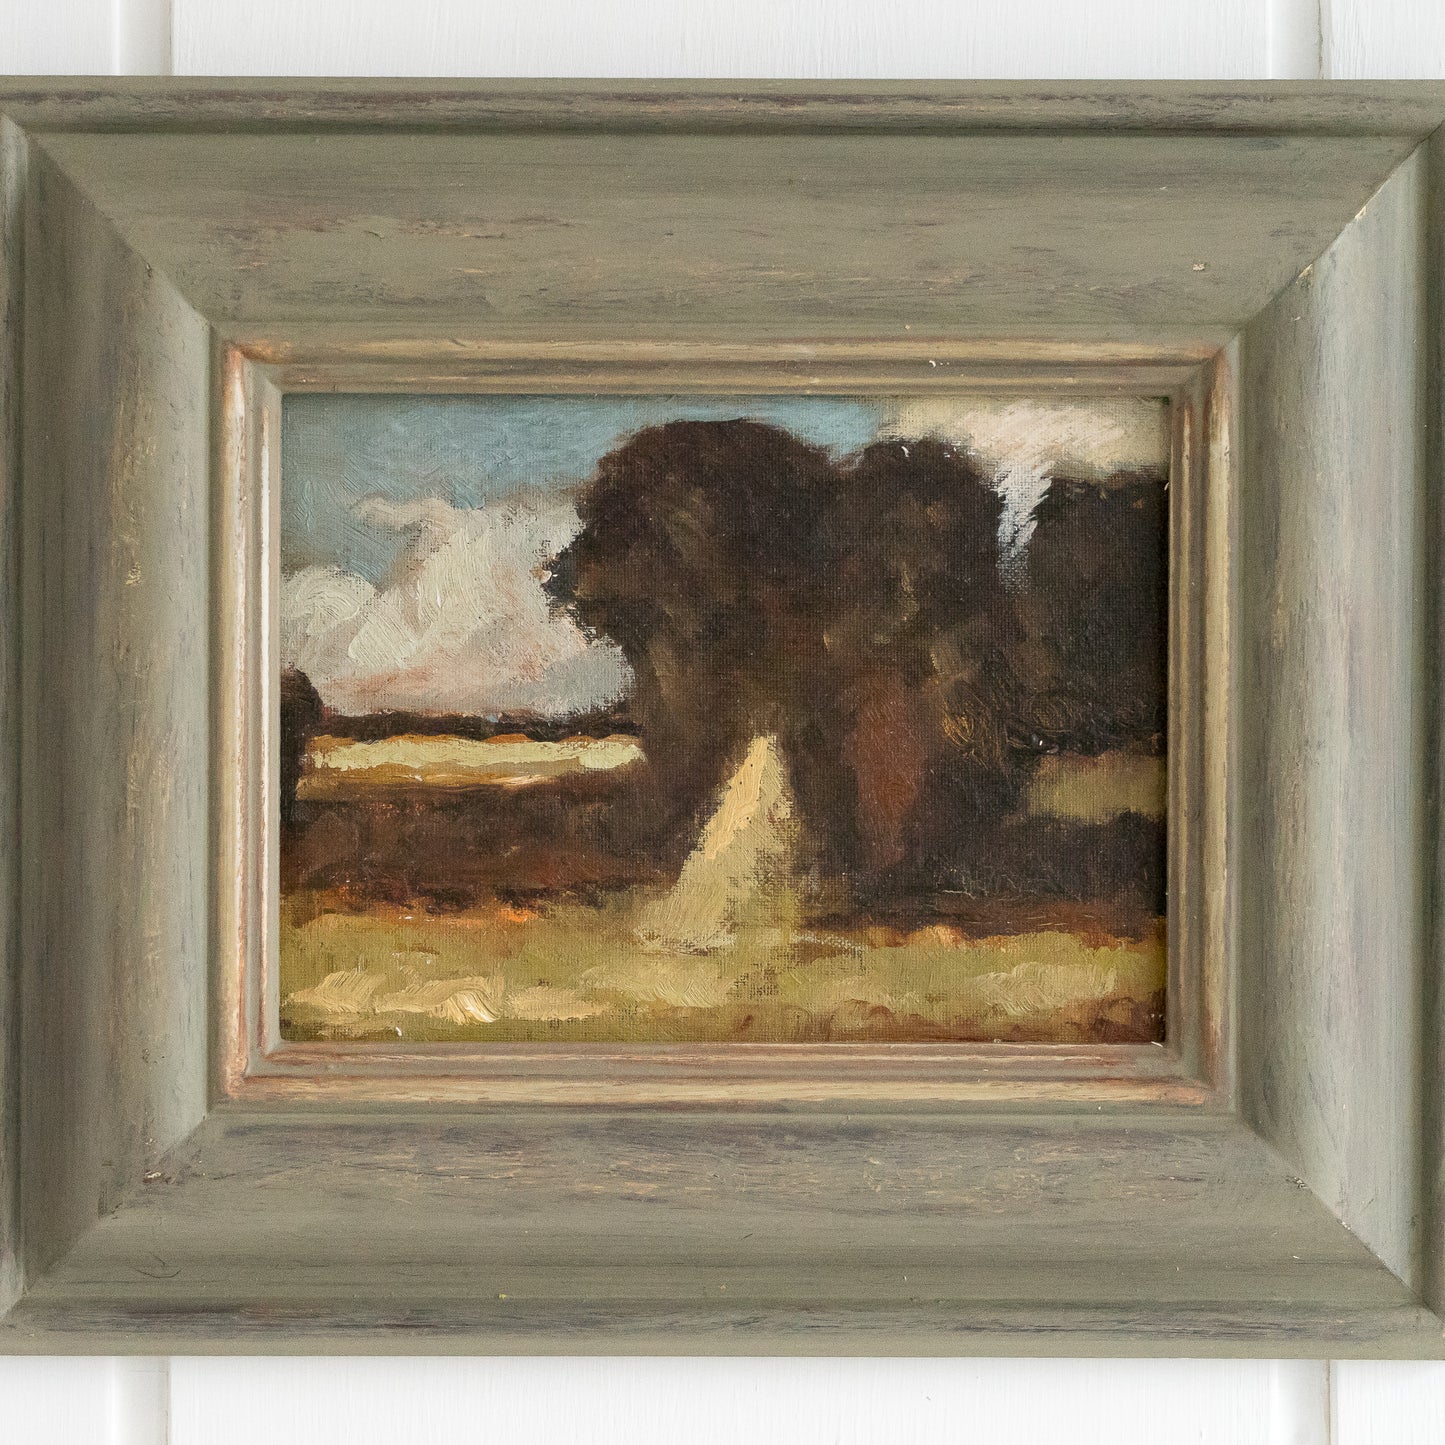 Framed Oil on Board Landscape Painting